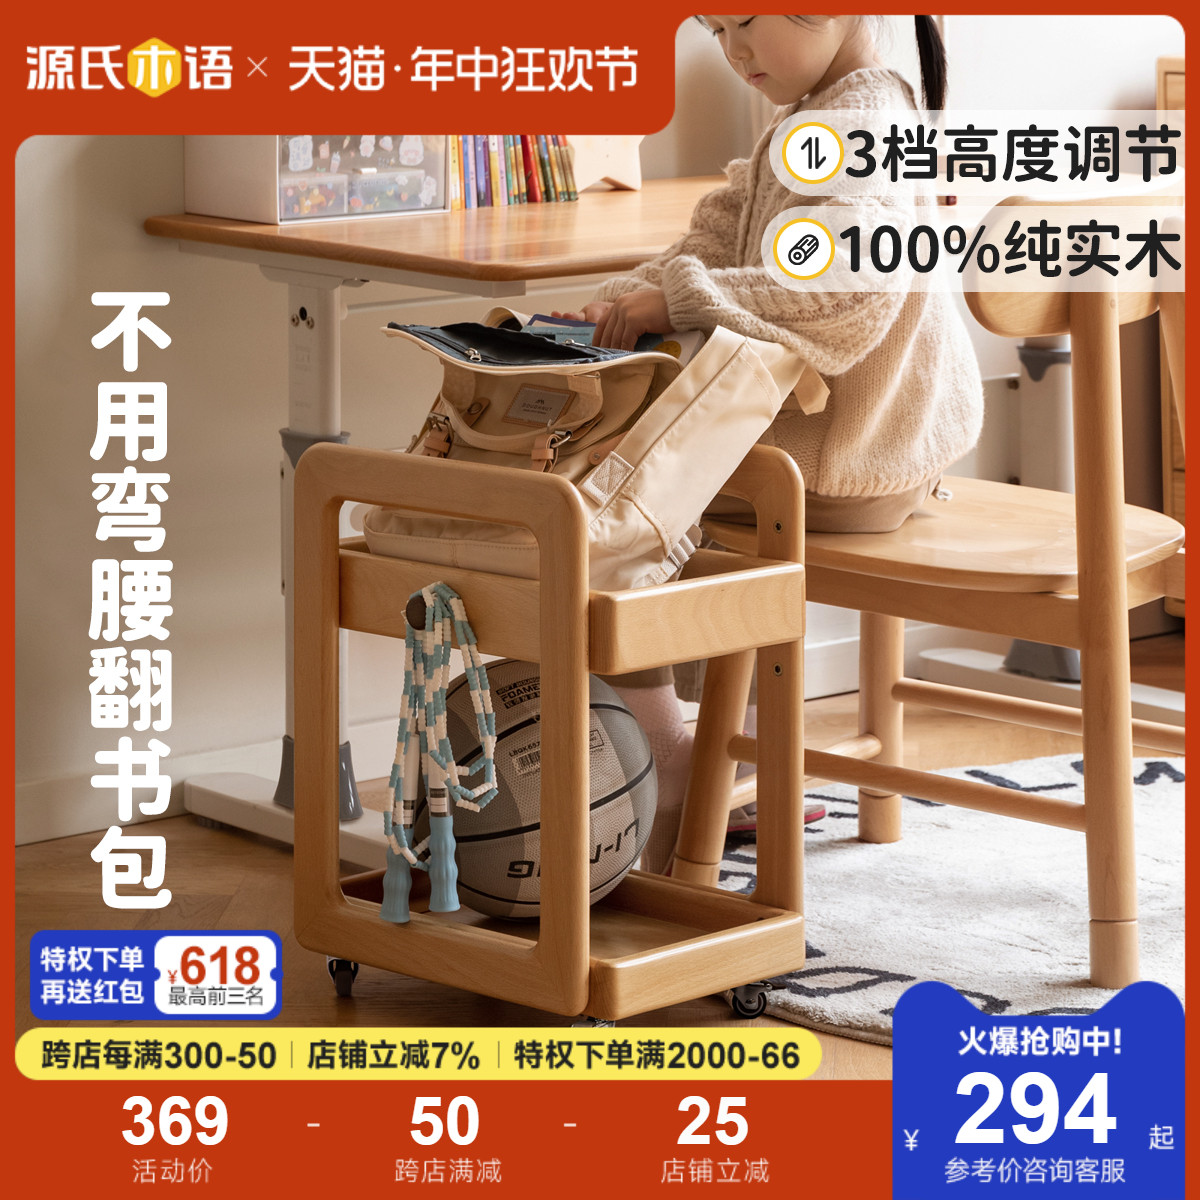 源氏木语儿童实木书架现代简约可移动置物架桌下推车储物架书包架